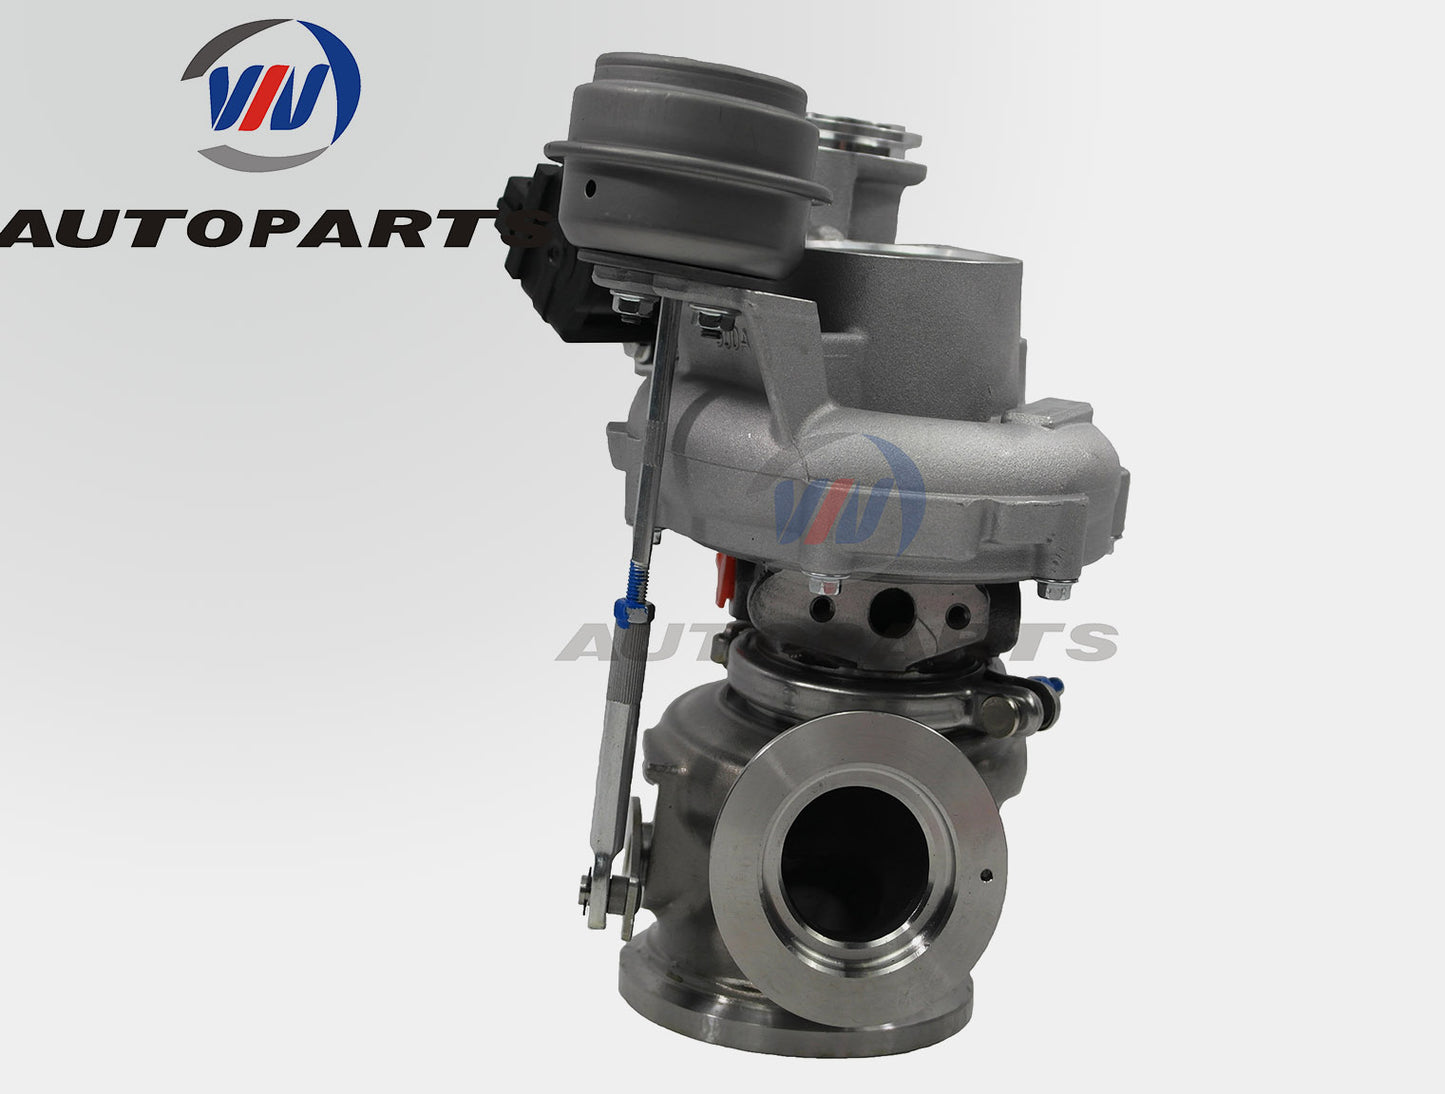 MGT2256GS Turbocharger for 2008-2012 550 550i 650i,750i,X5,X7, F01,F02 N63 4.4L V8 Engine